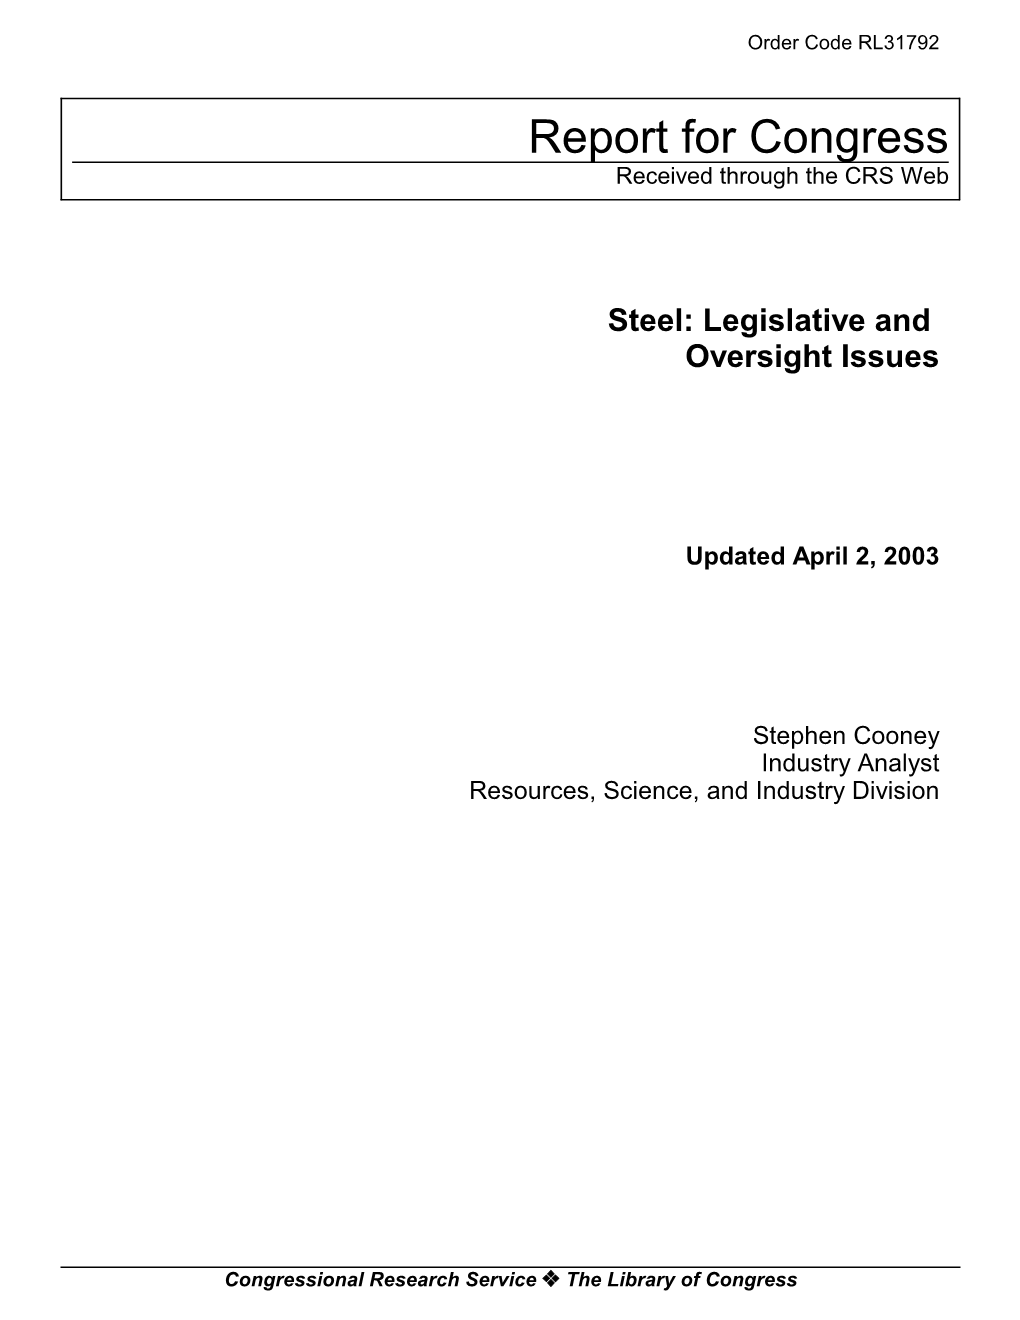 Steel: Legislative and Oversight Issues